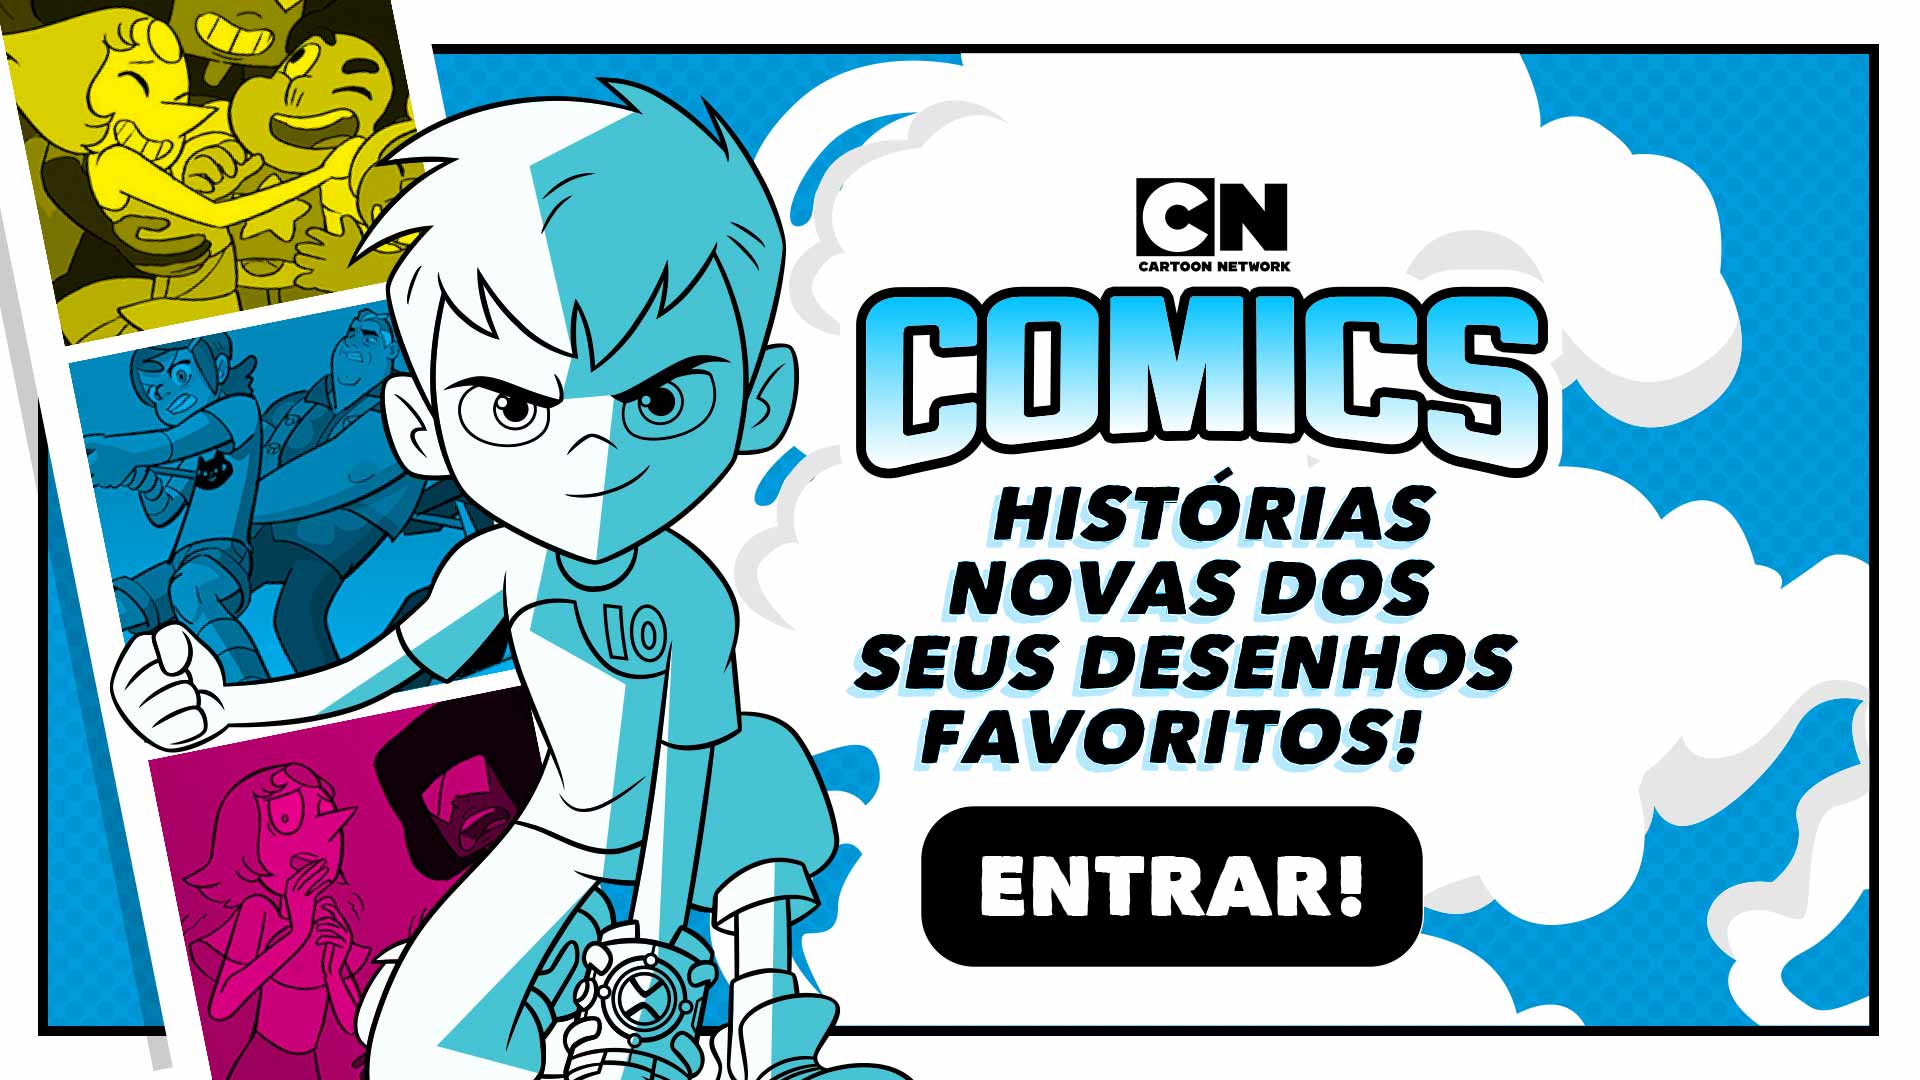 X 上的 Cartoon Network Brasil：「A gente quer saber! Eu, escolheria todos! Mas  esse Ominitrix ai parece ser bem legal! 👀 #quemdoabrincajunto   / X